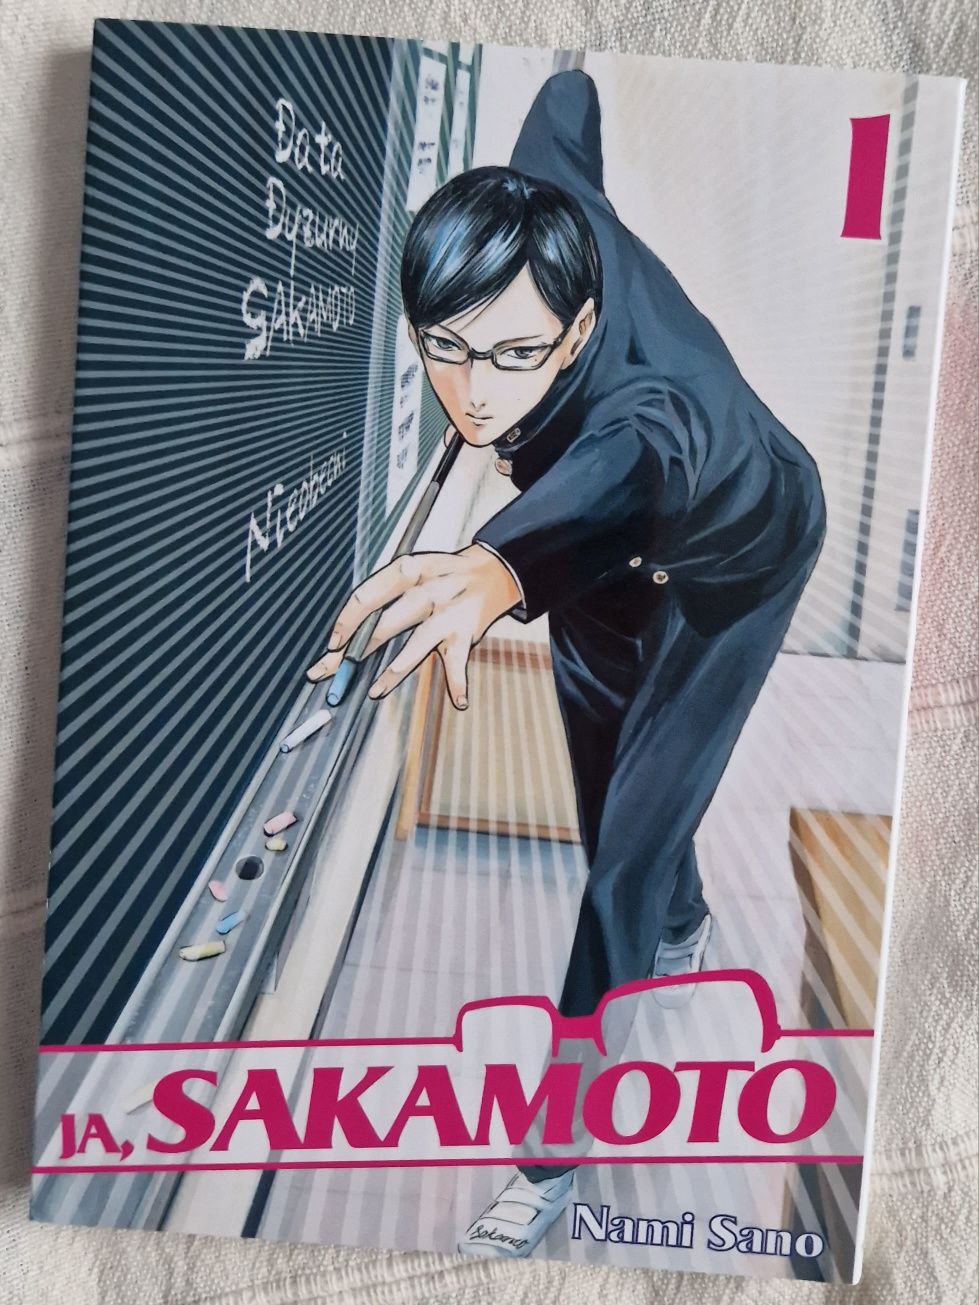 Manga Ja, Sakamoto Nami Sano